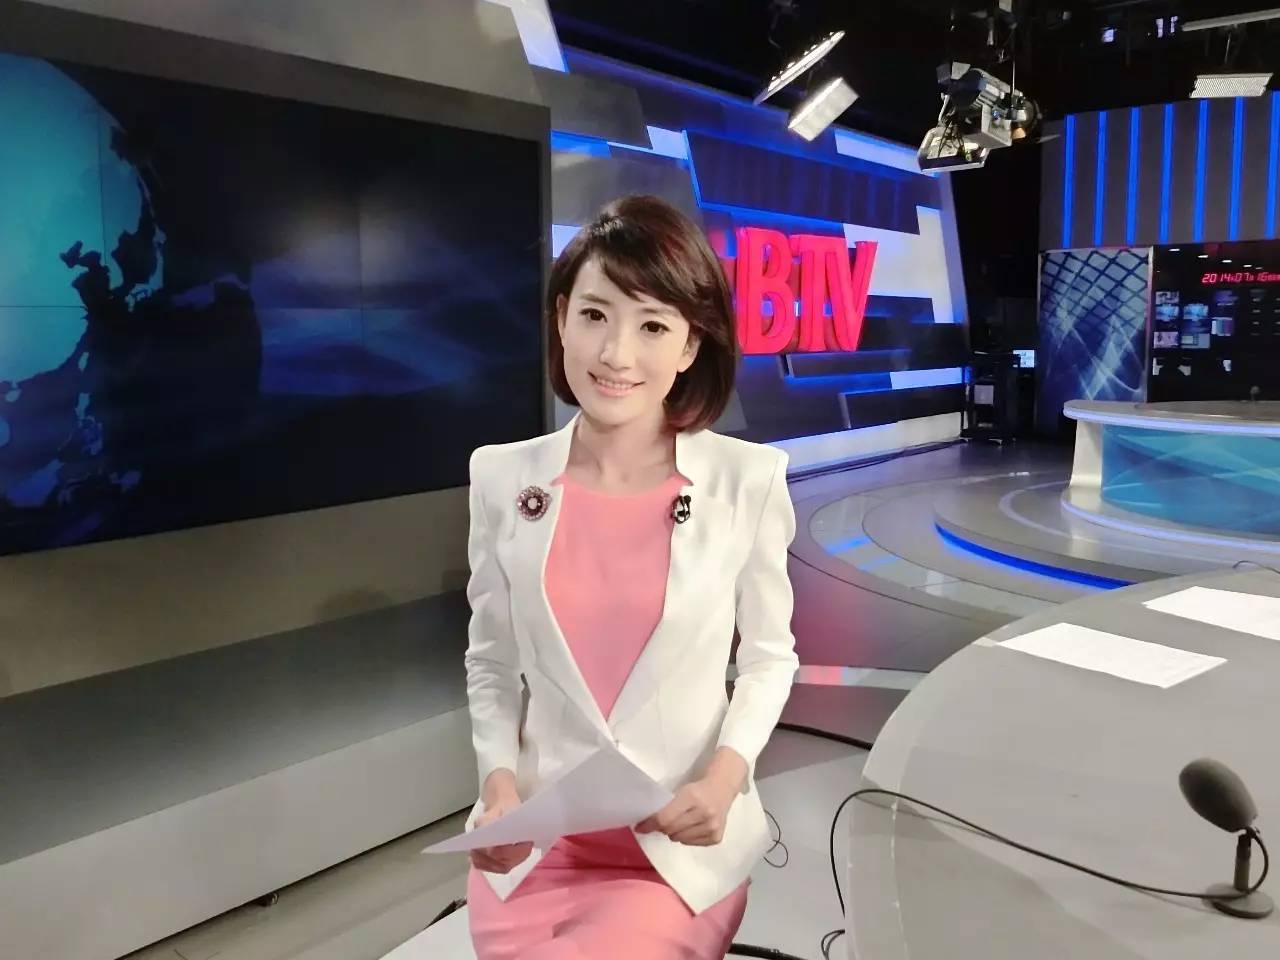 她是一位专业主播,从毕业起就开始坐在btv(北京电视台)的新闻主播台前